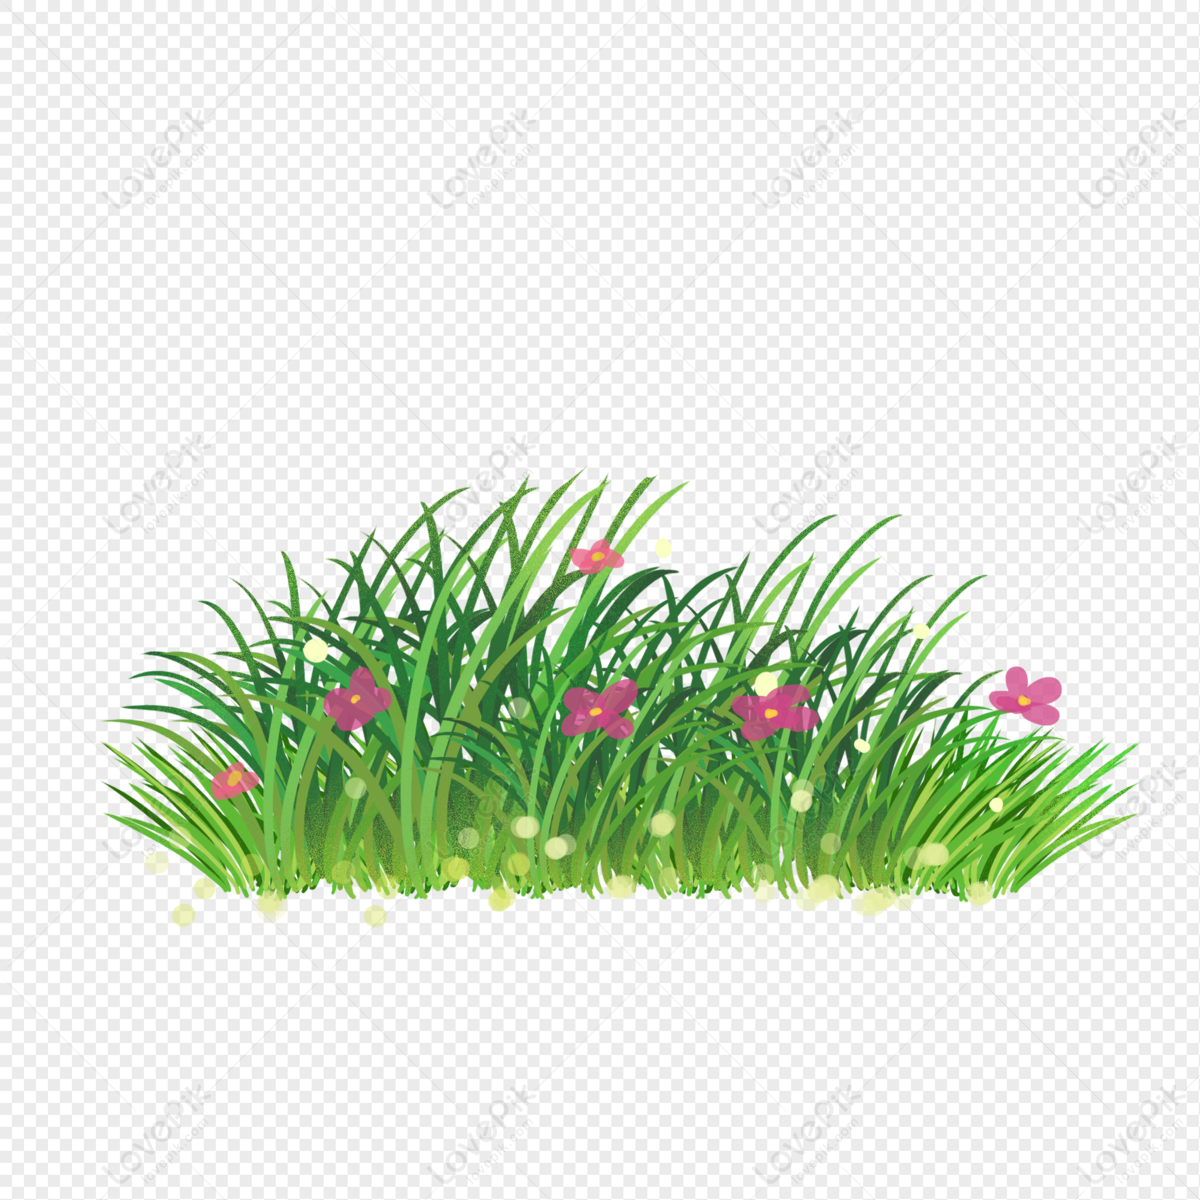 Một bức tranh vẽ cây cỏ sẽ mang lại cho bạn cảm giác bình yên, cùng nét đẹp tự nhiên của thiên nhiên. Hãy thưởng thức những bức tranh này, và bạn sẽ được đắm chìm trong không khí trong lành.